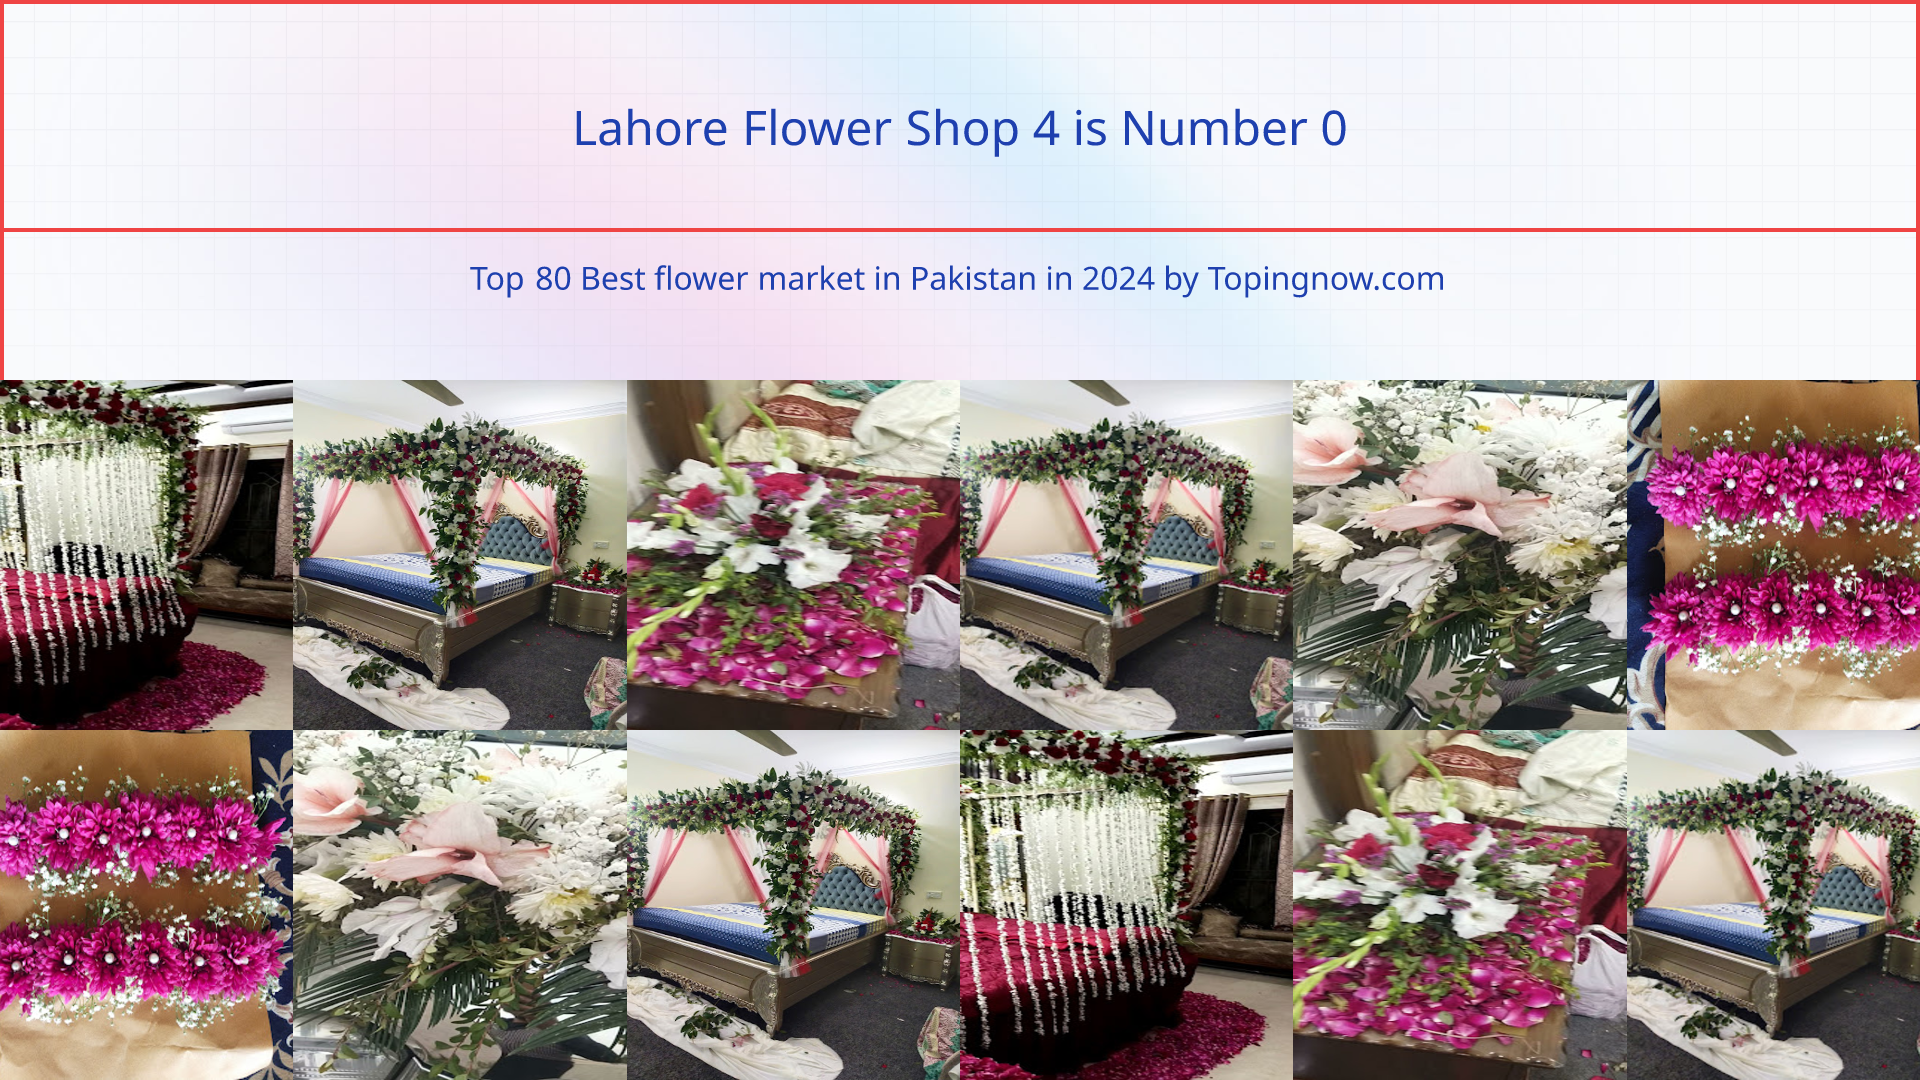 Lahore Flower Shop 4: Top 80 Best flower market in Pakistan in 2024